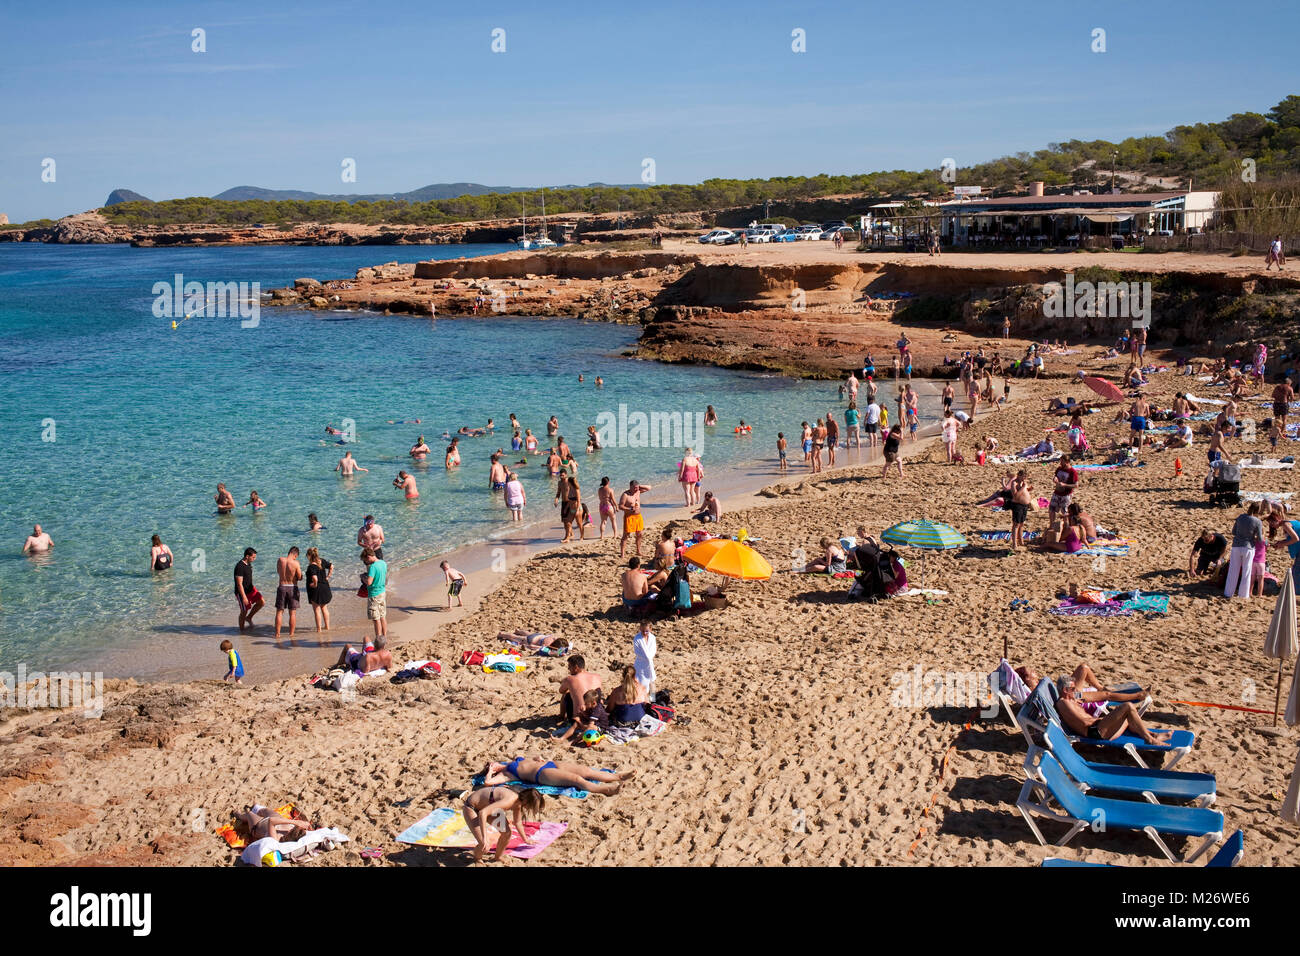 the beach at playa de cala conta in the mediterranean Stock Photo